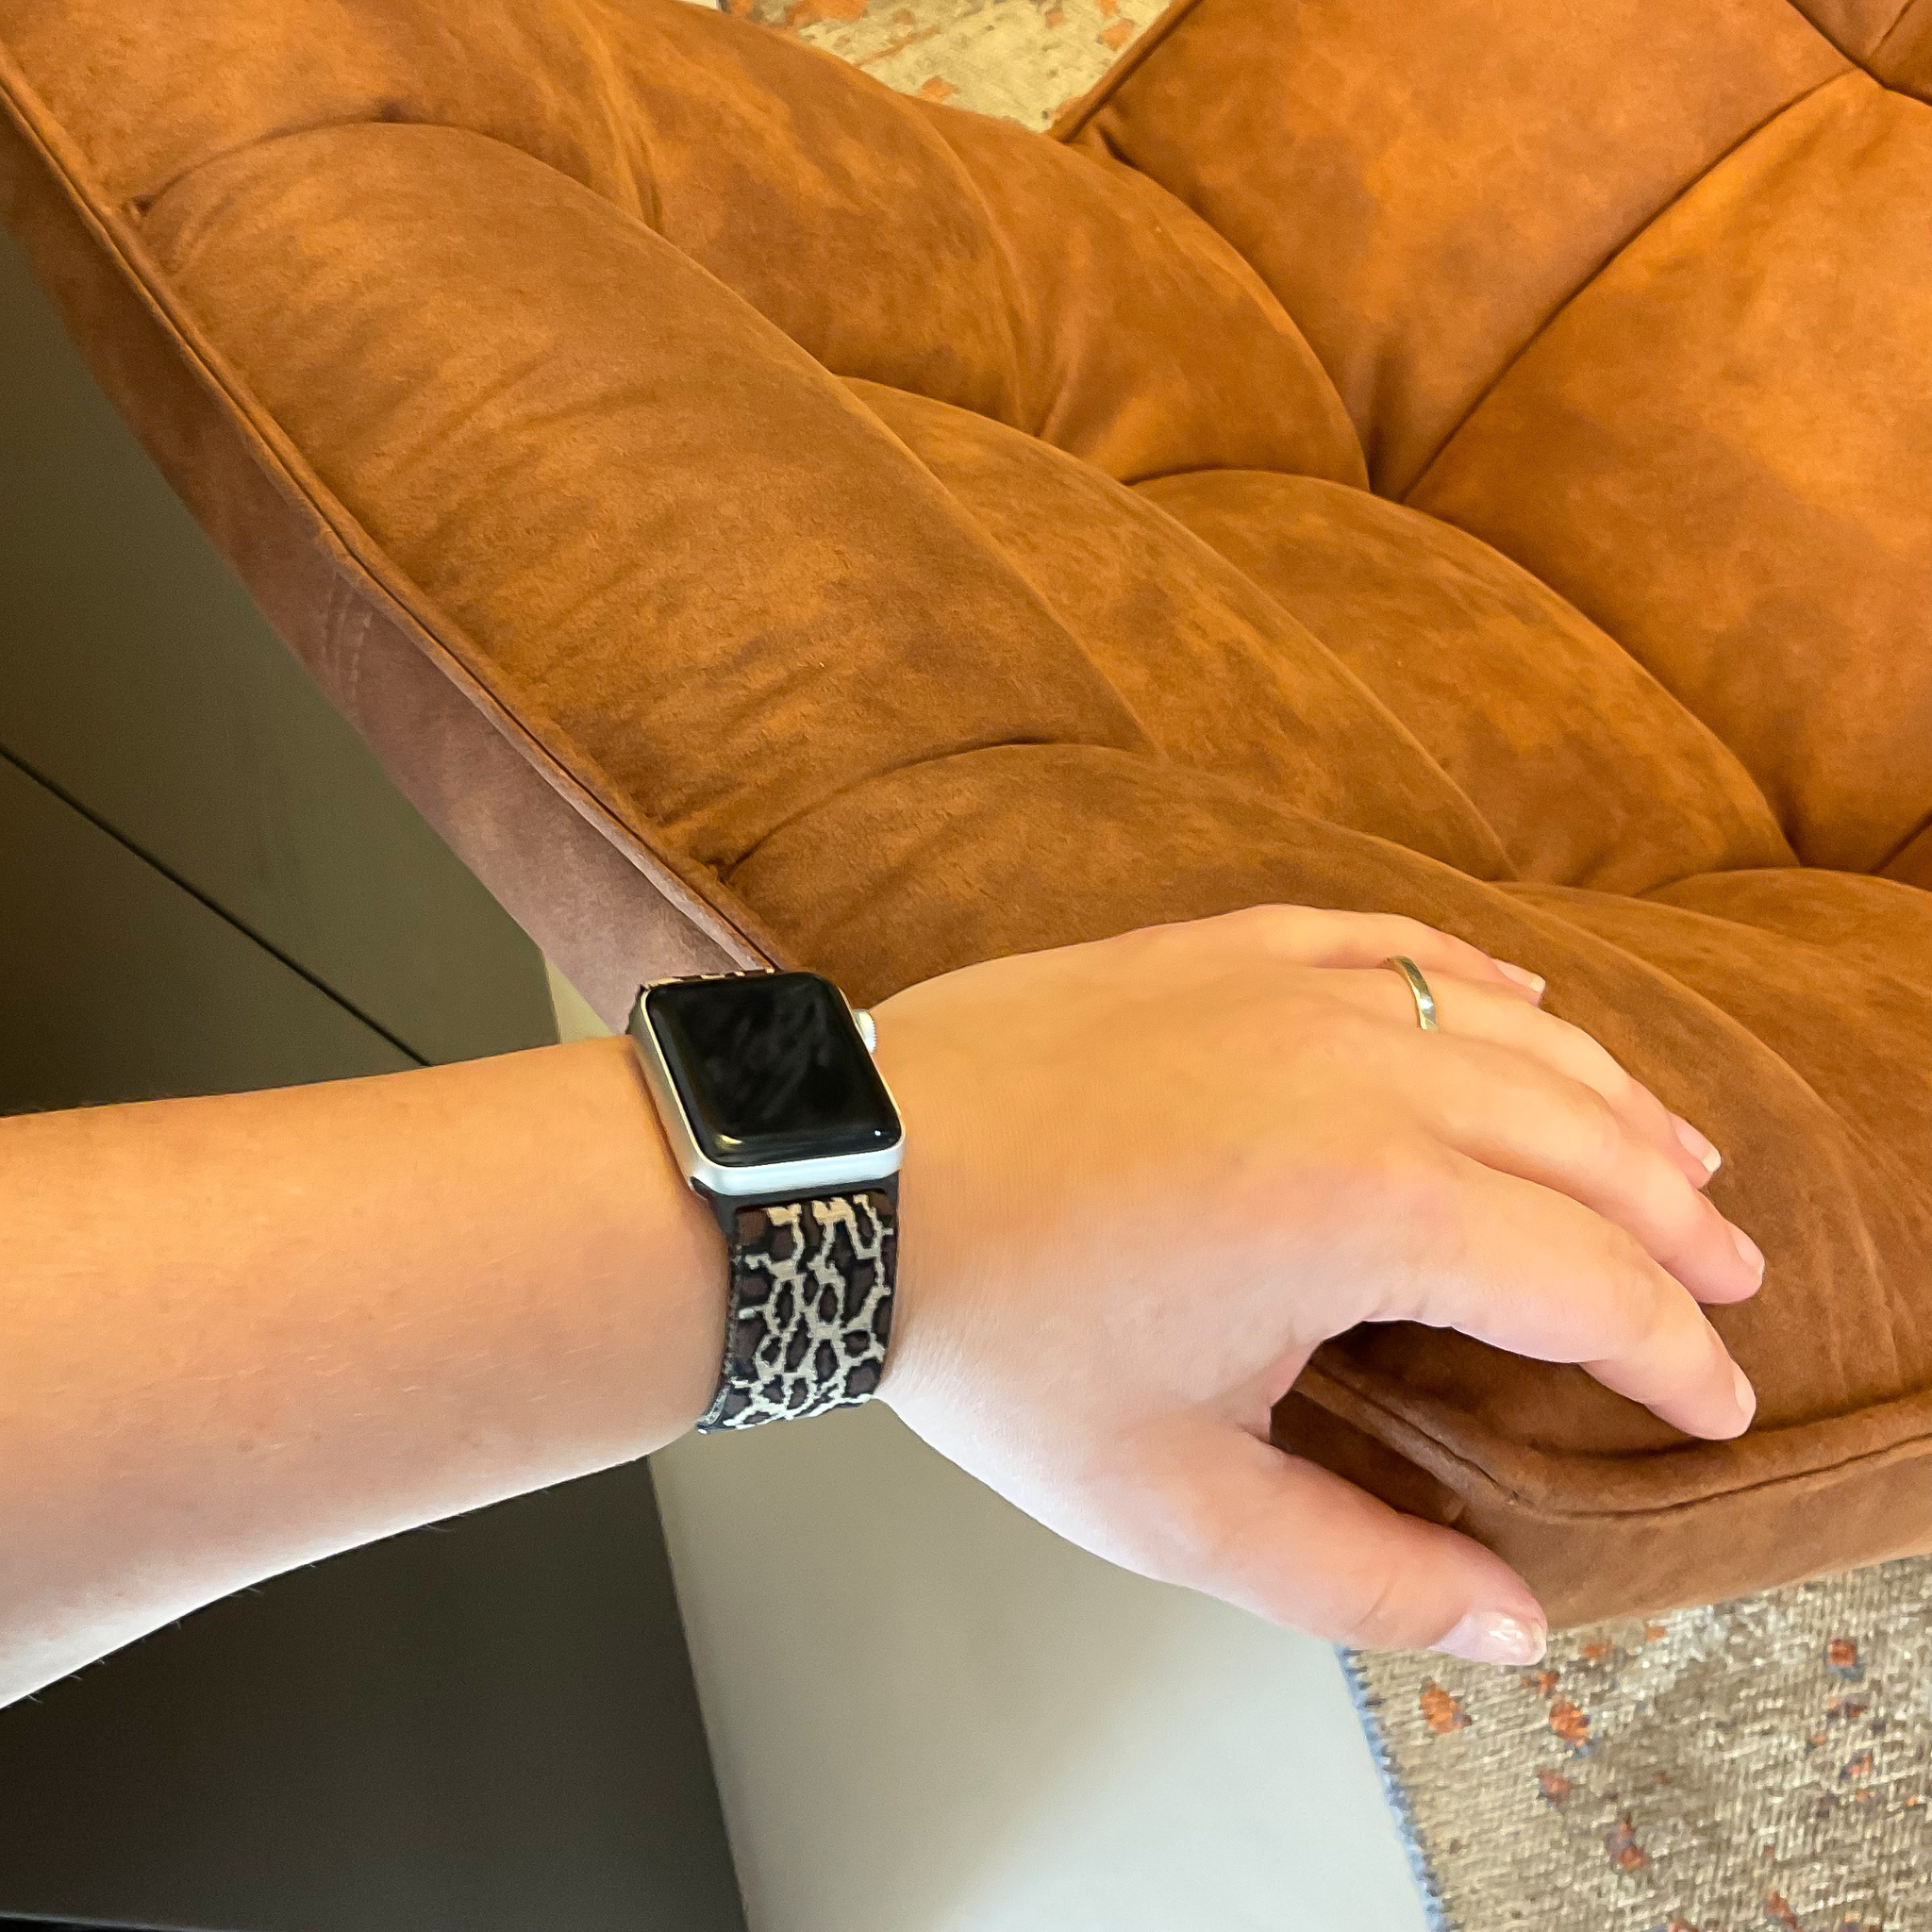 Apple Watch nylon geweven solo band - leopard